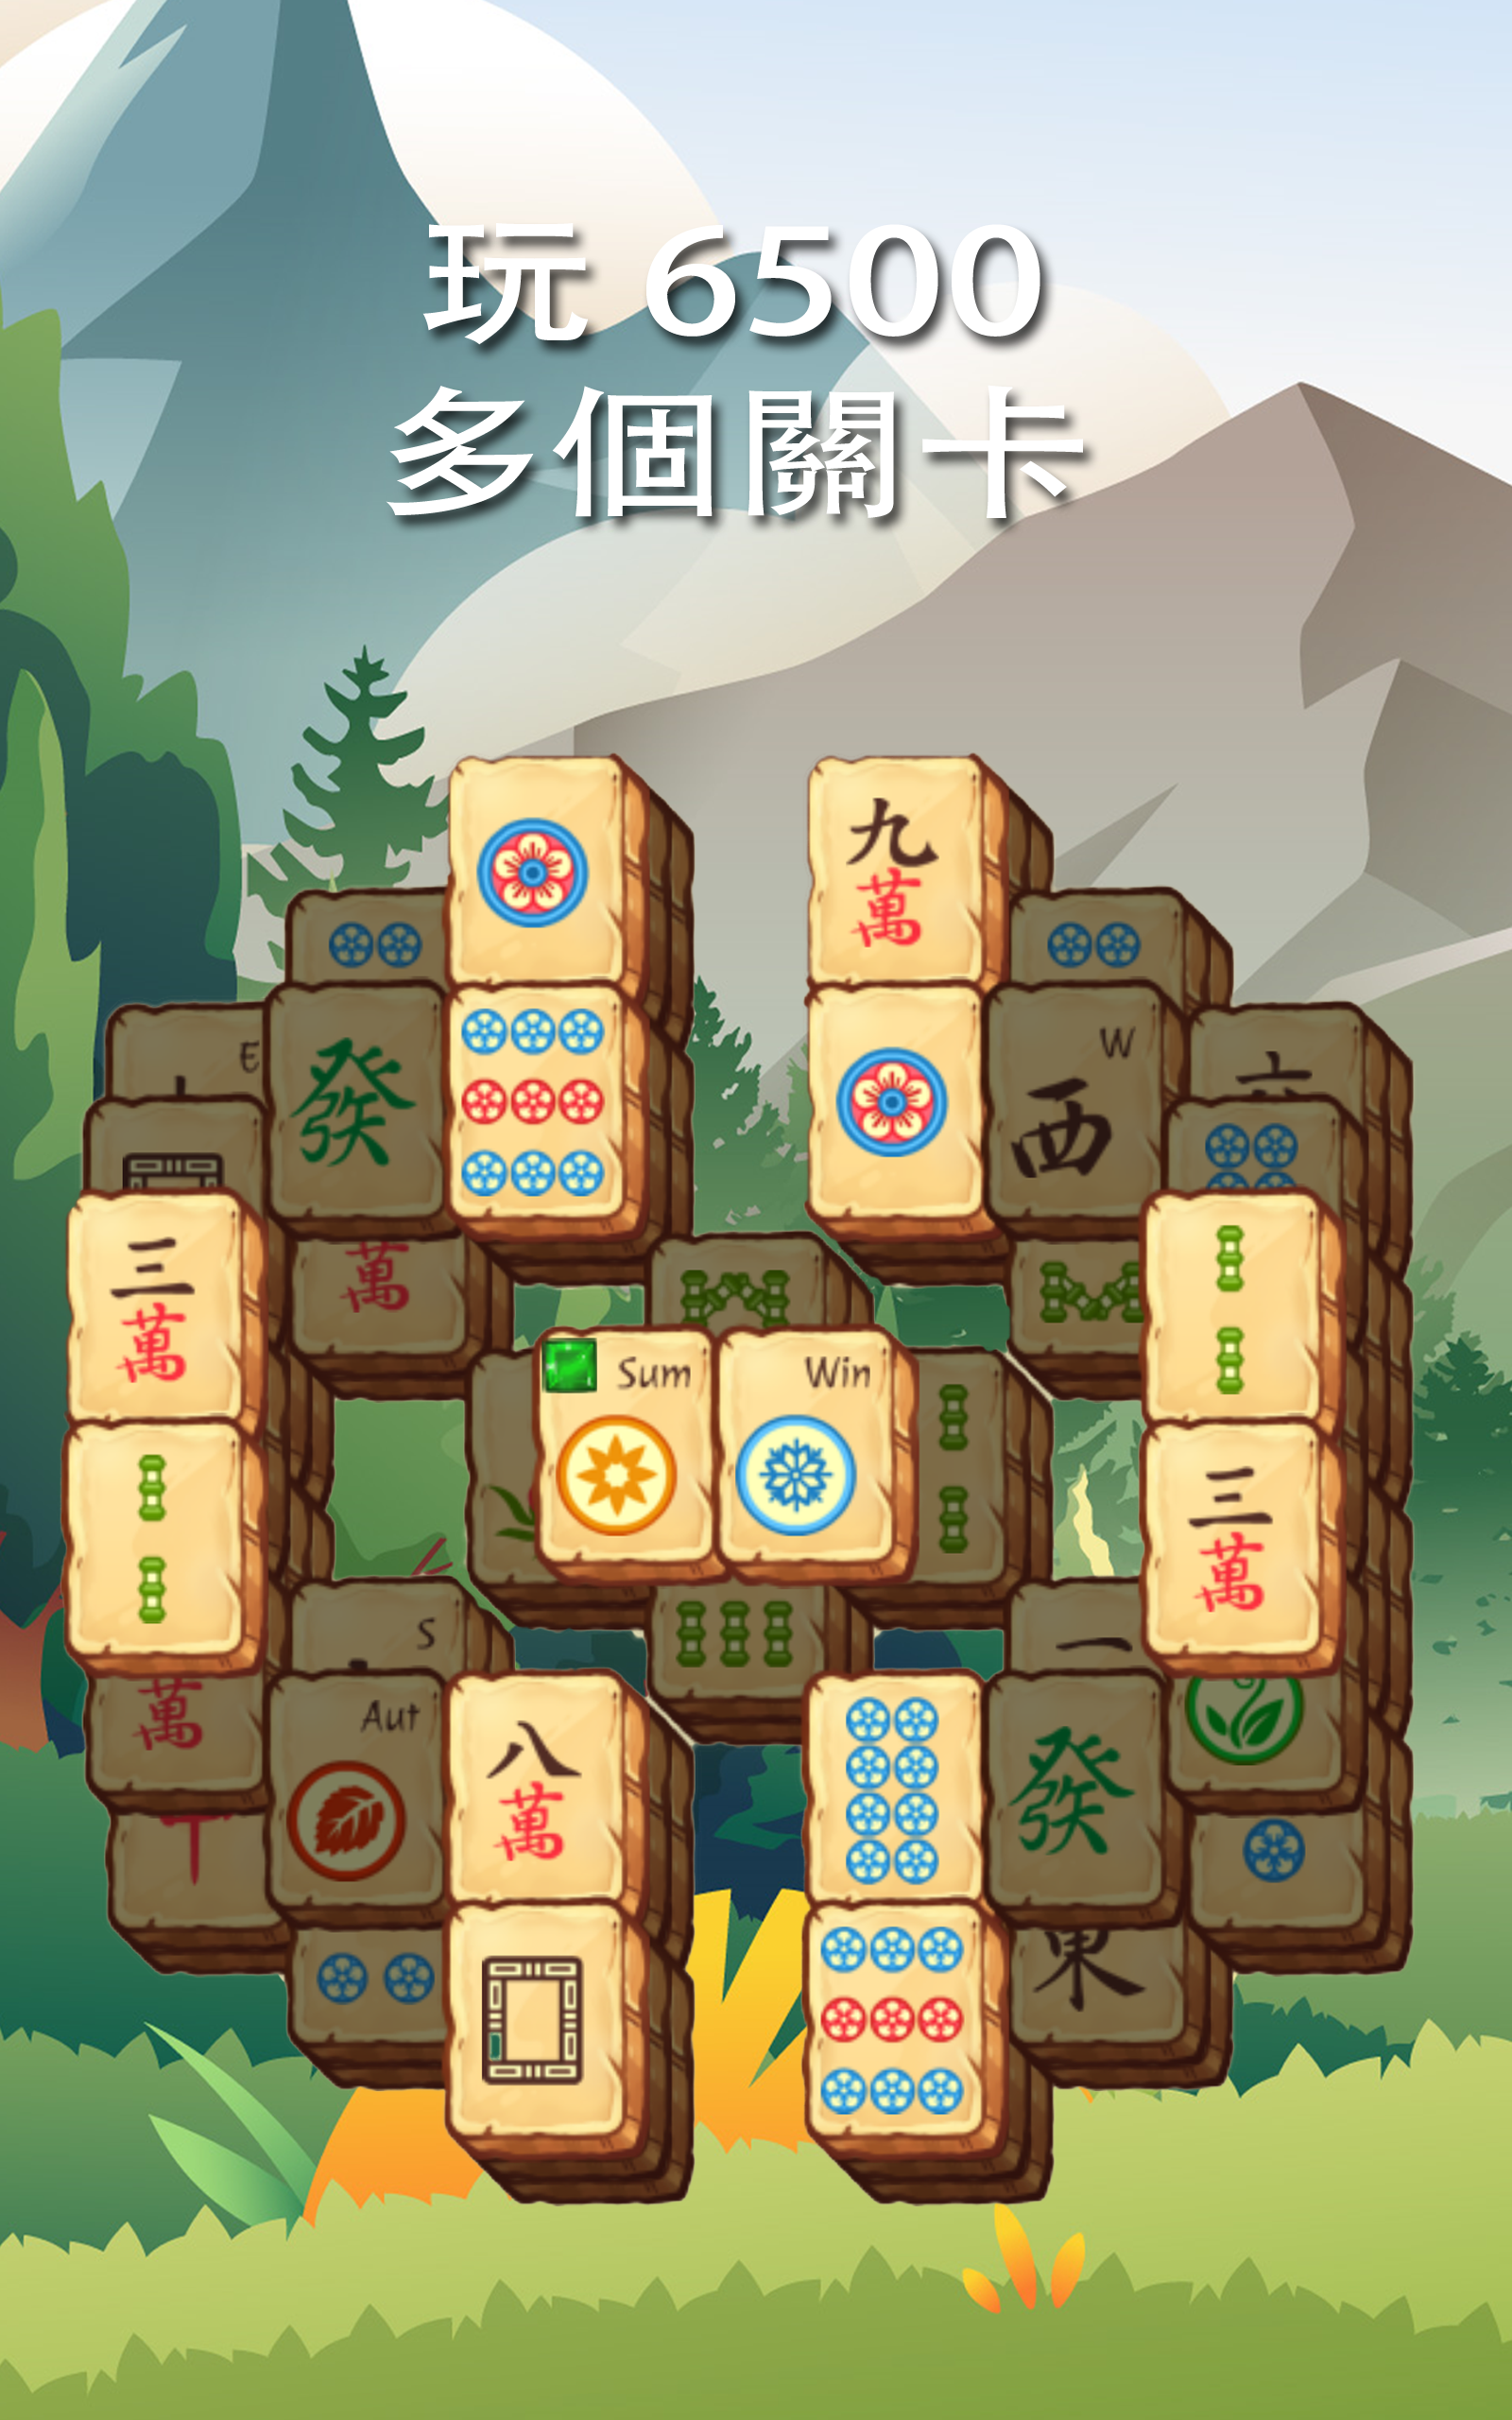 麻將冒險 Mahjong Treasure Quest遊戲截圖